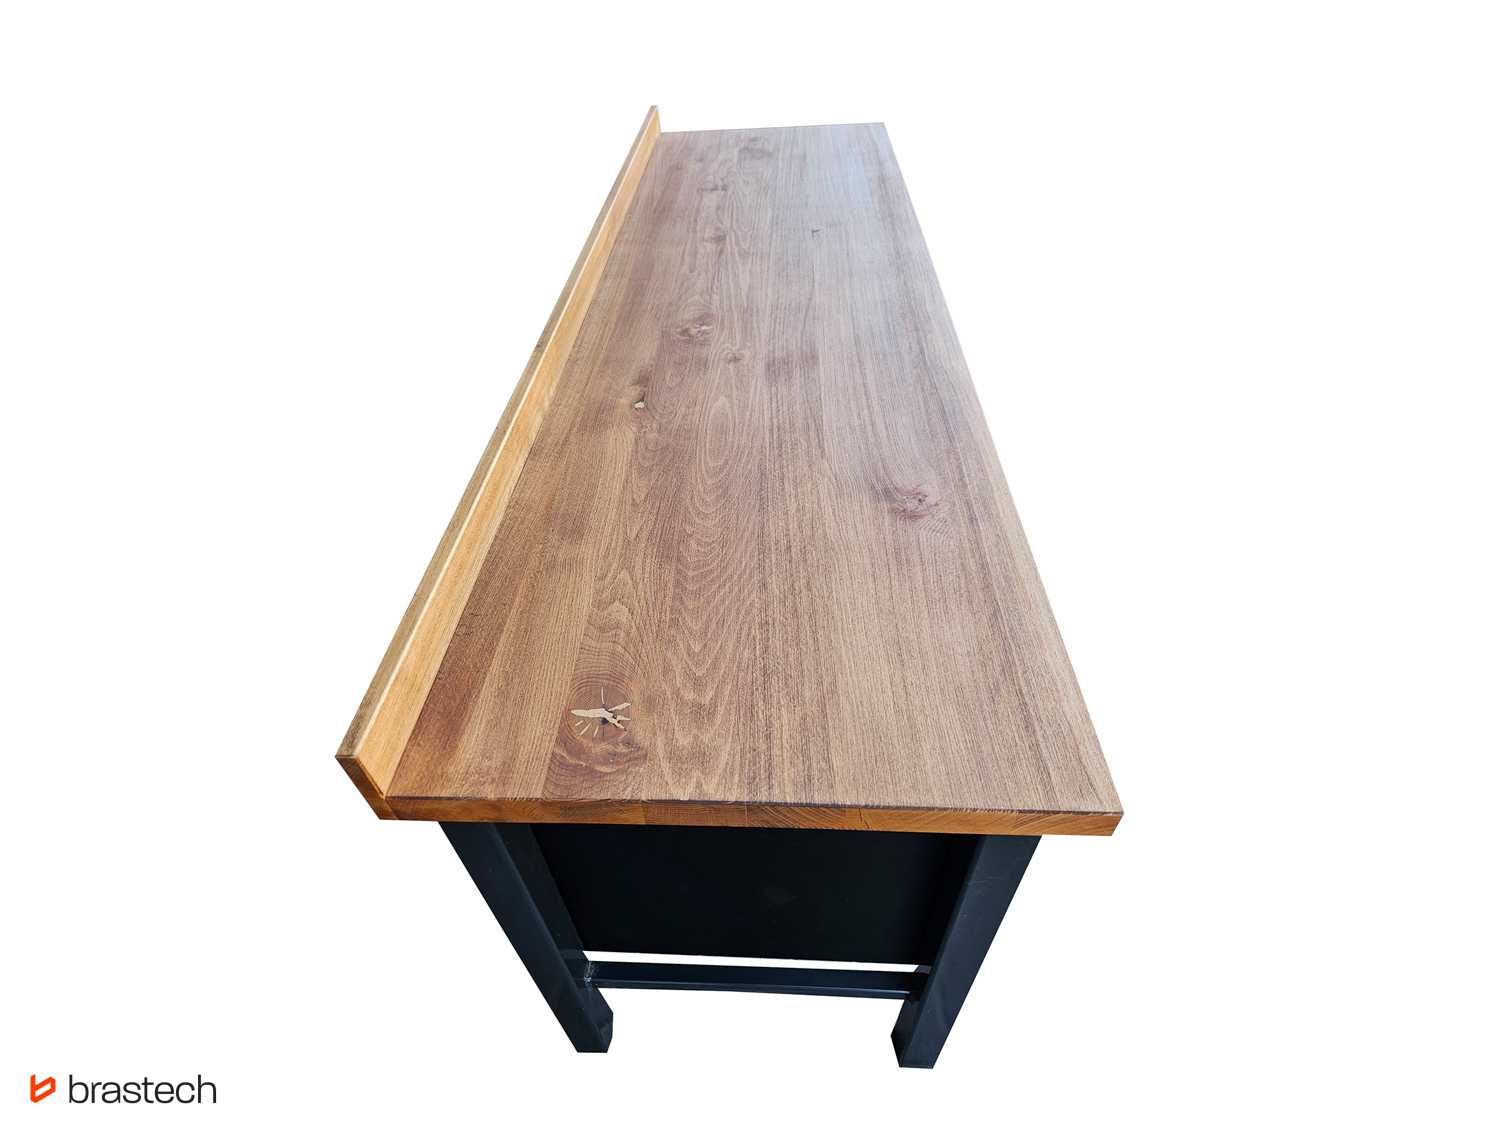 Stół biurowy warsztatowy loft 200x62 cm GARAŻ BIURO blat drewniany lof